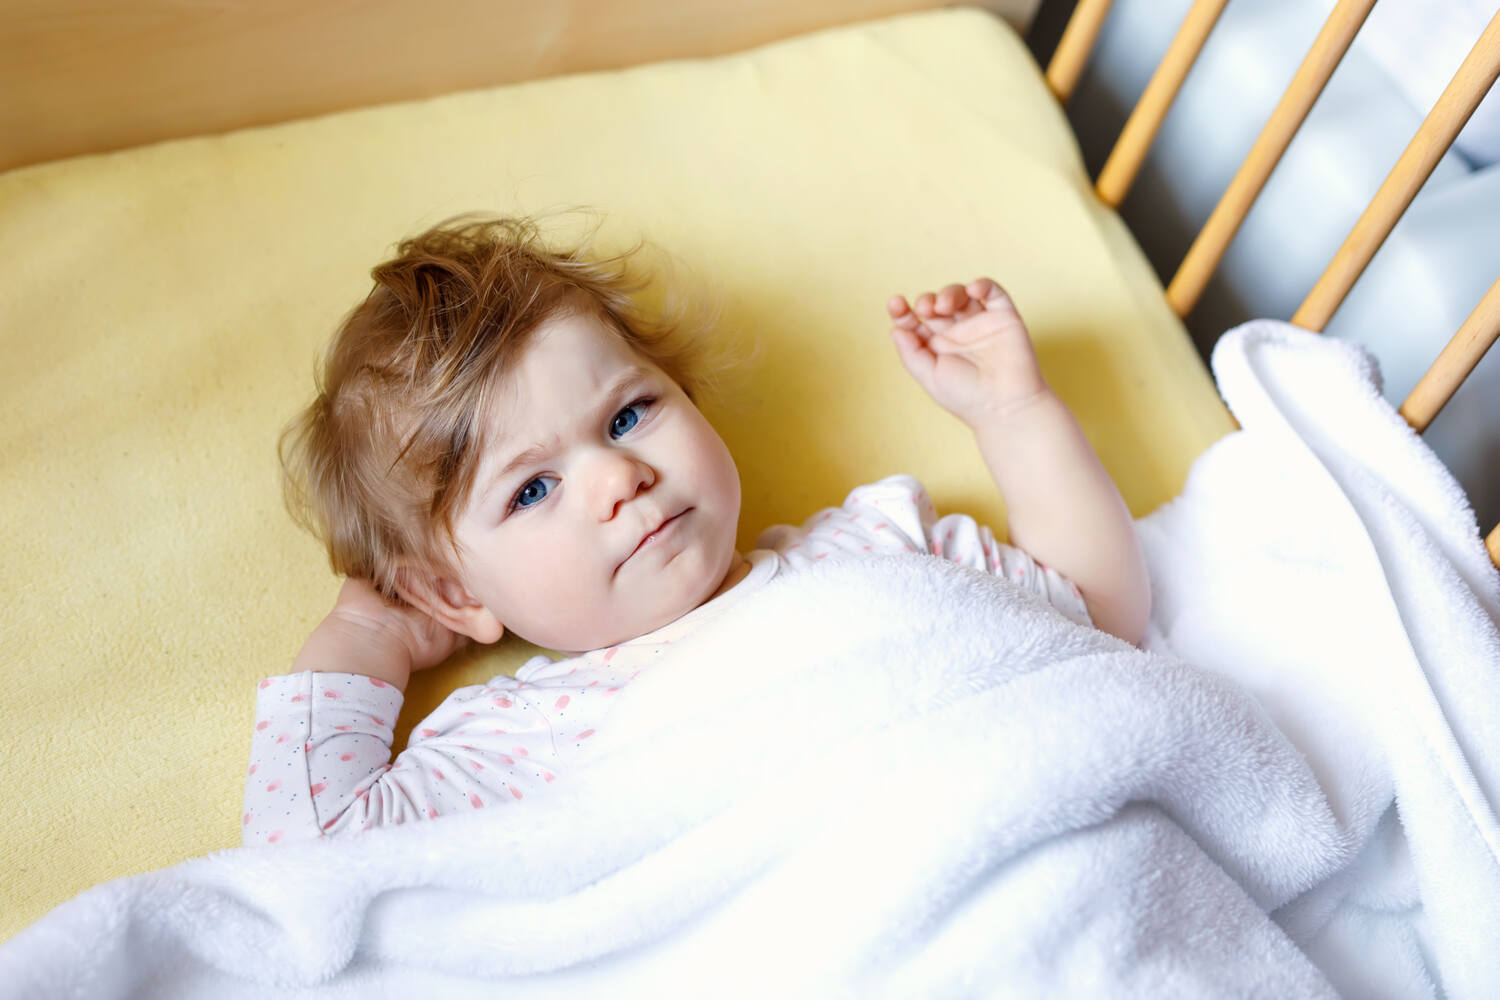 A toddler girl lying awake in cot